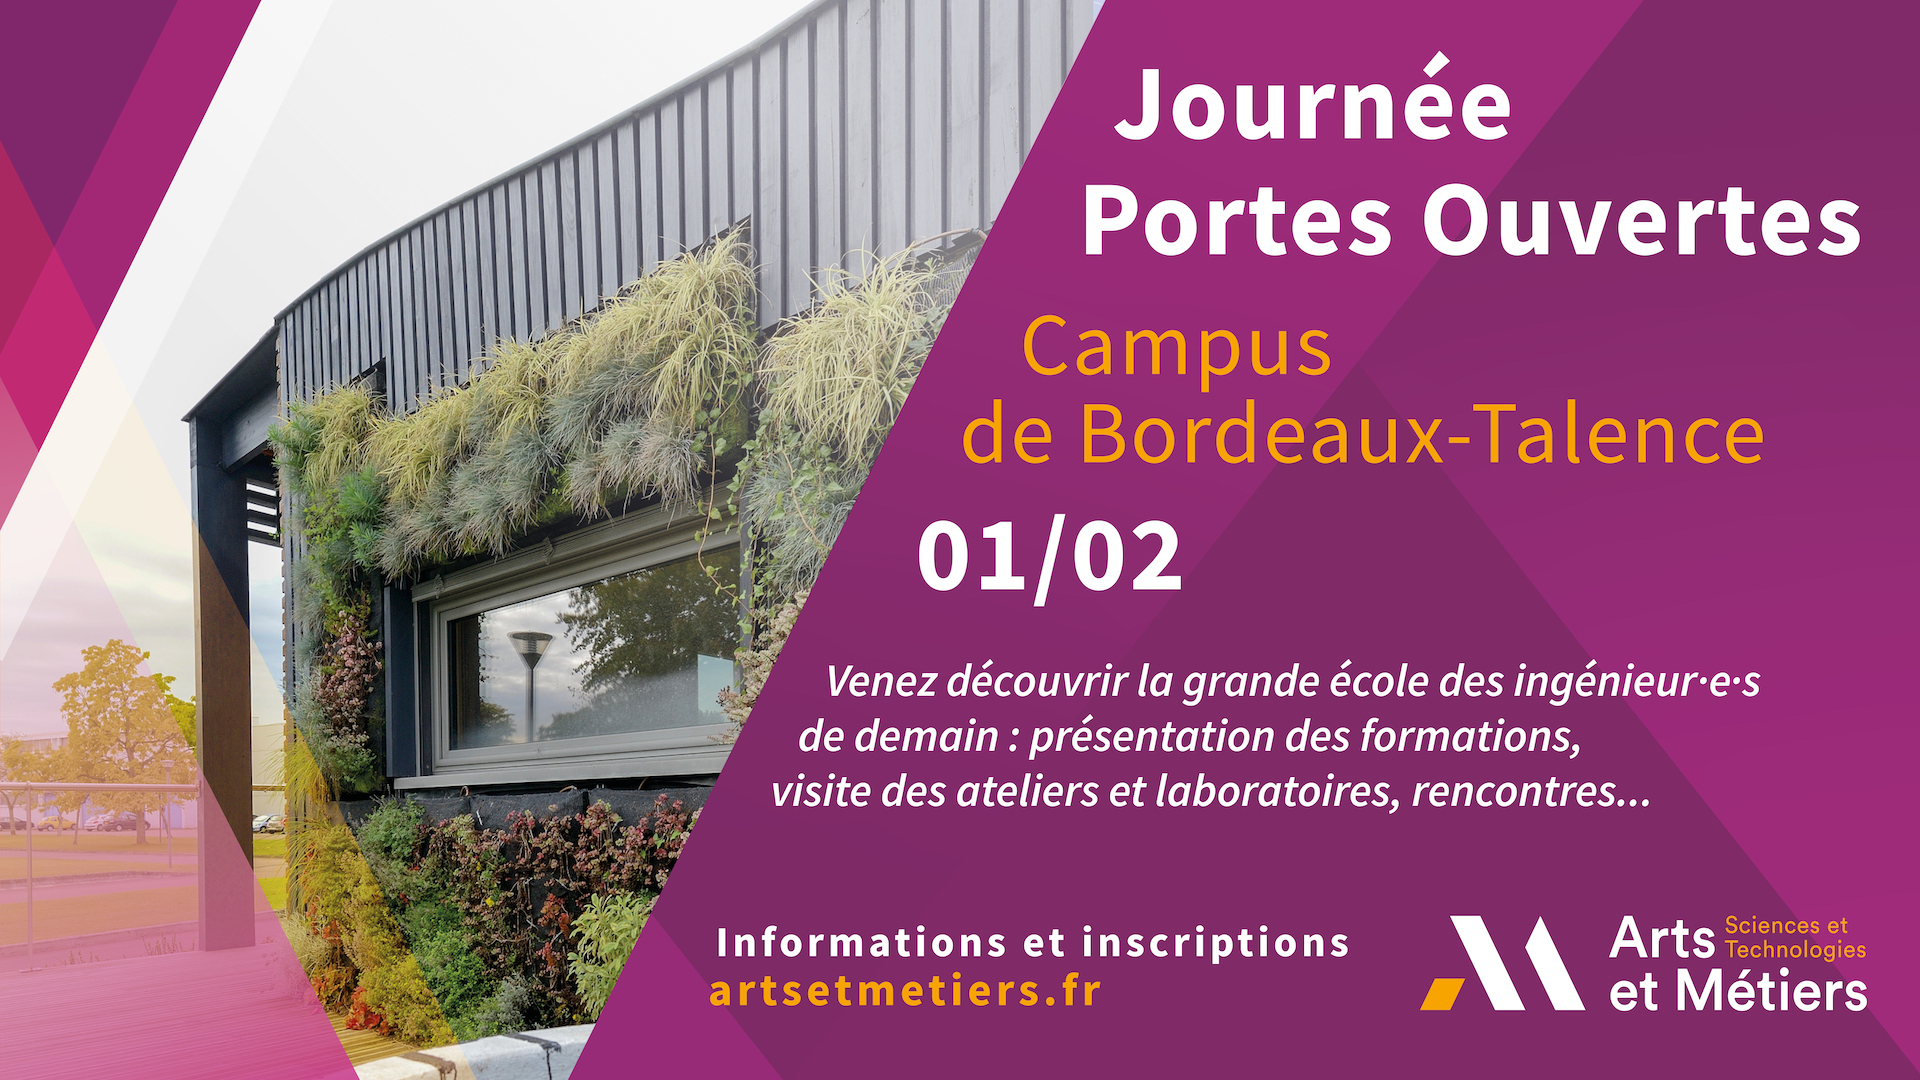 Journée Portes Ouvertes du campus de Bordeaux-Talence / Arts et métiers